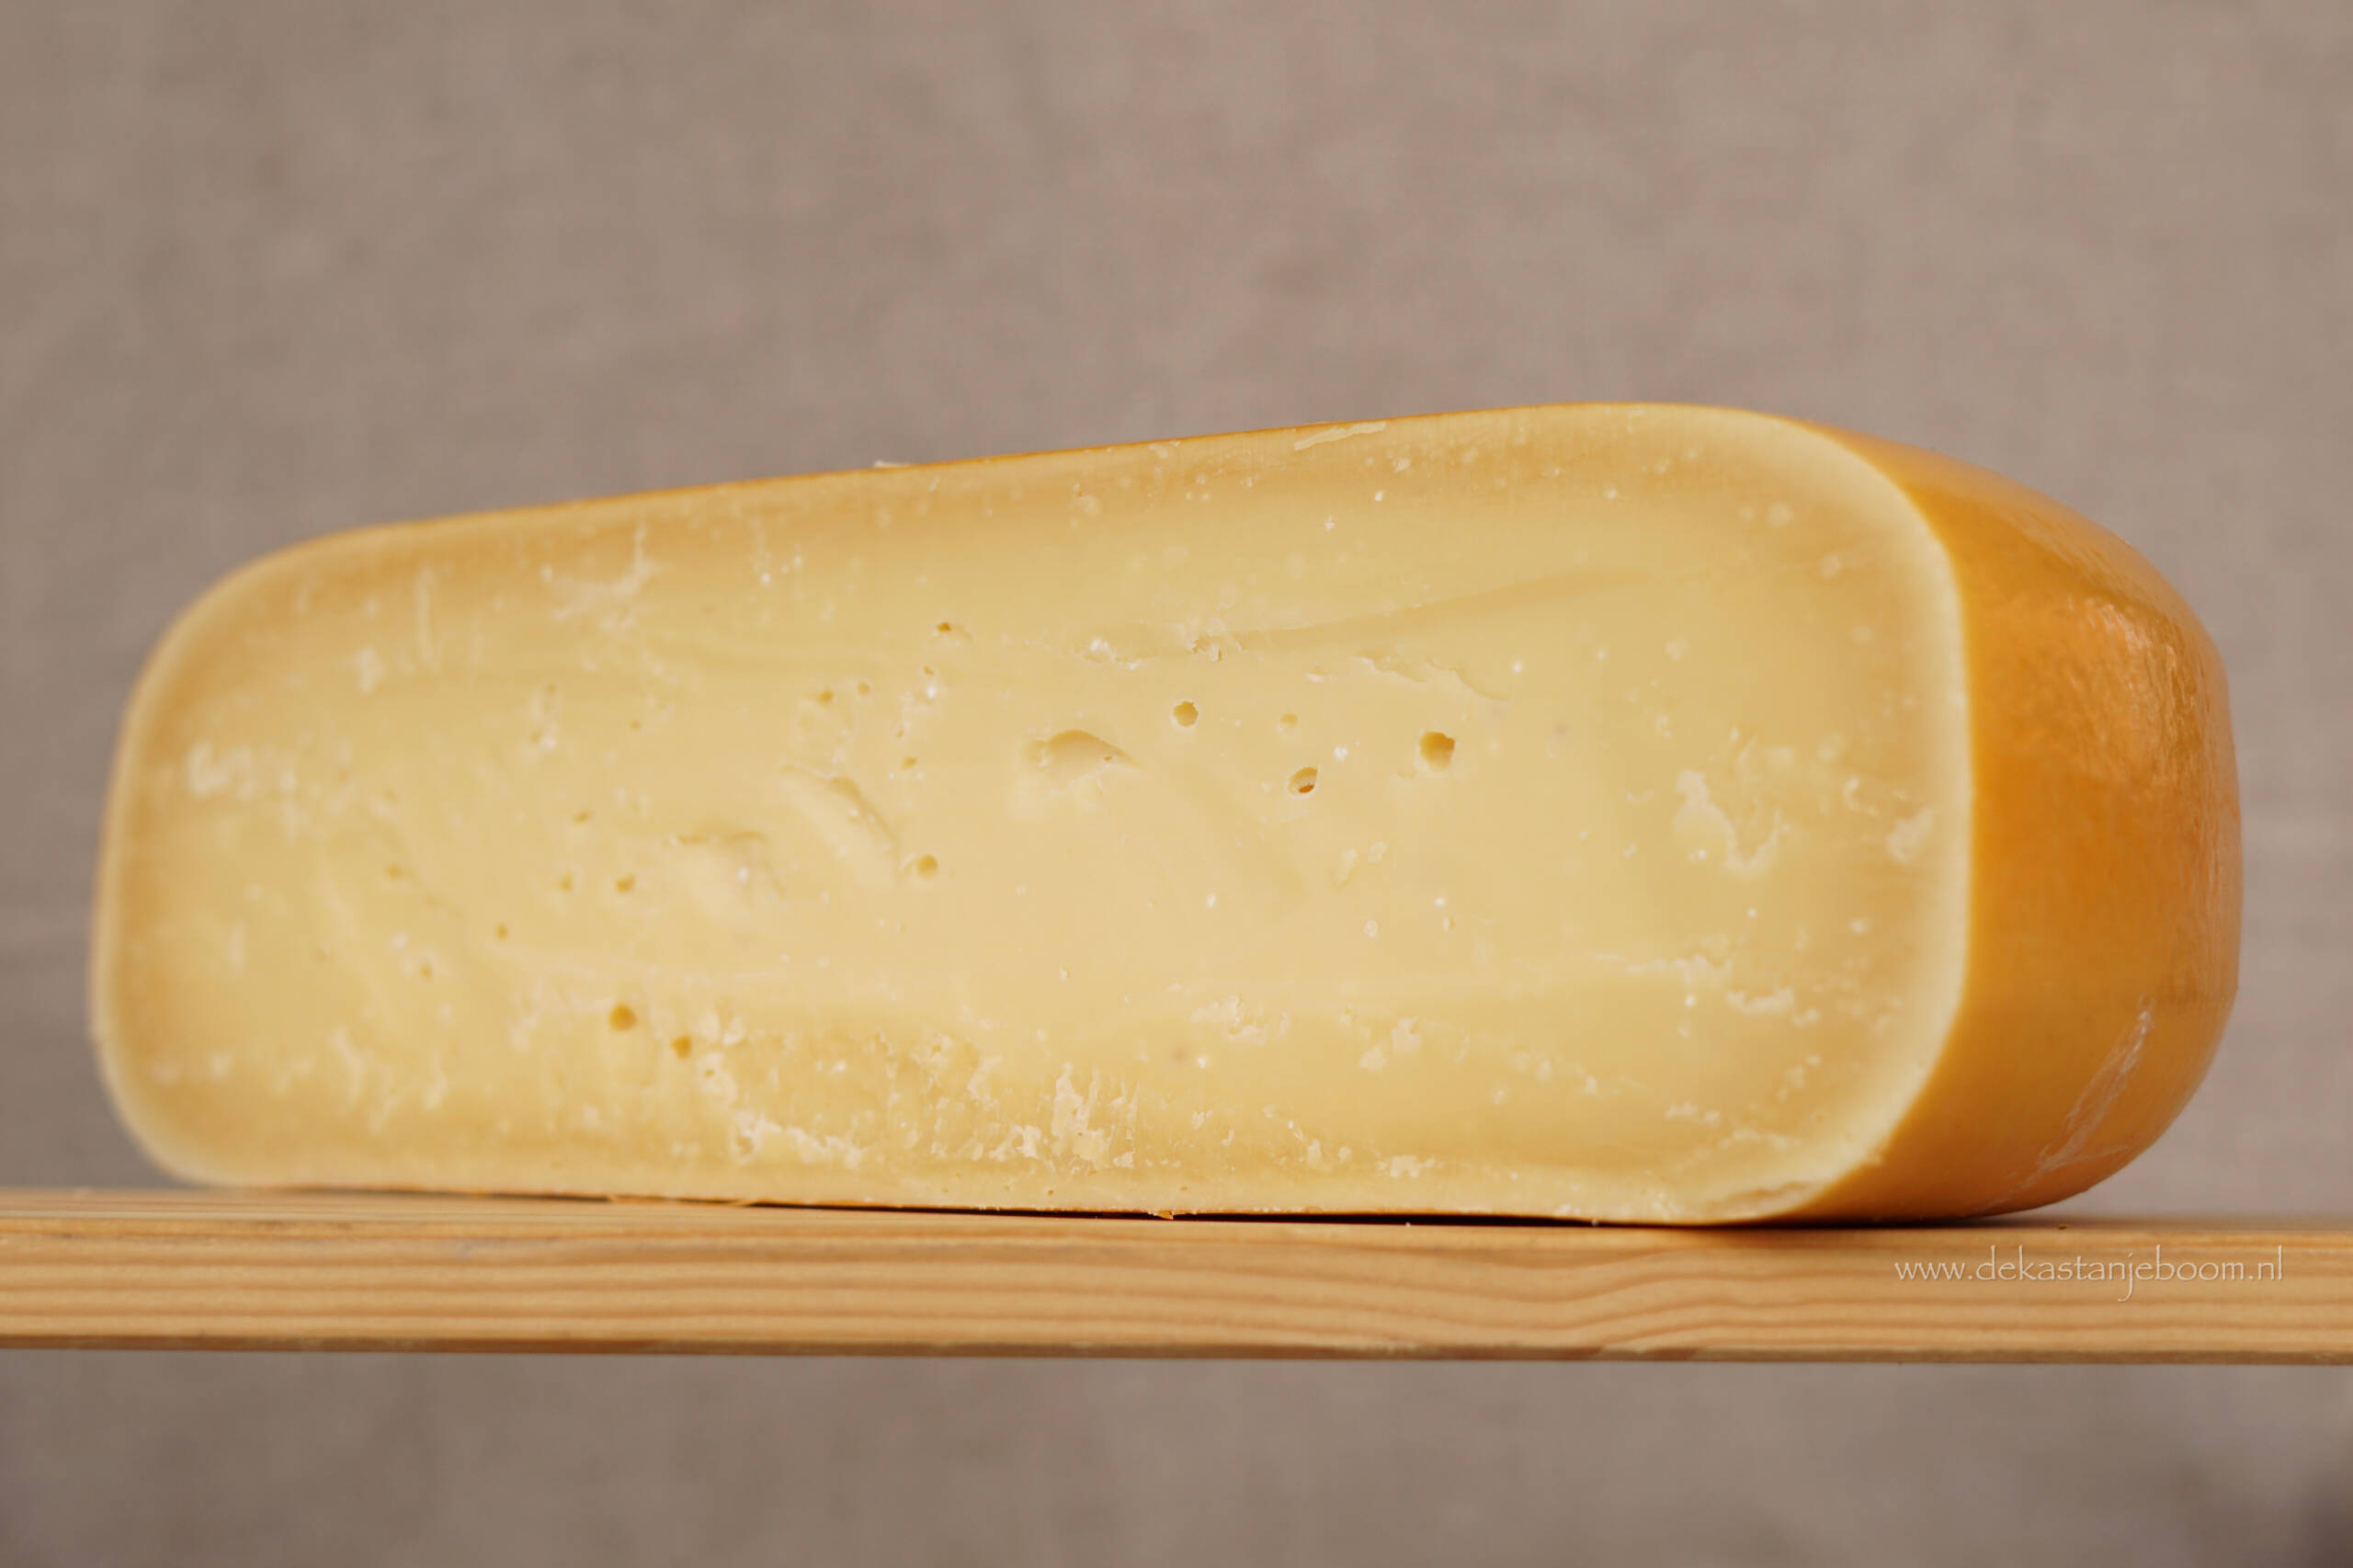 Boerderij kaas oud